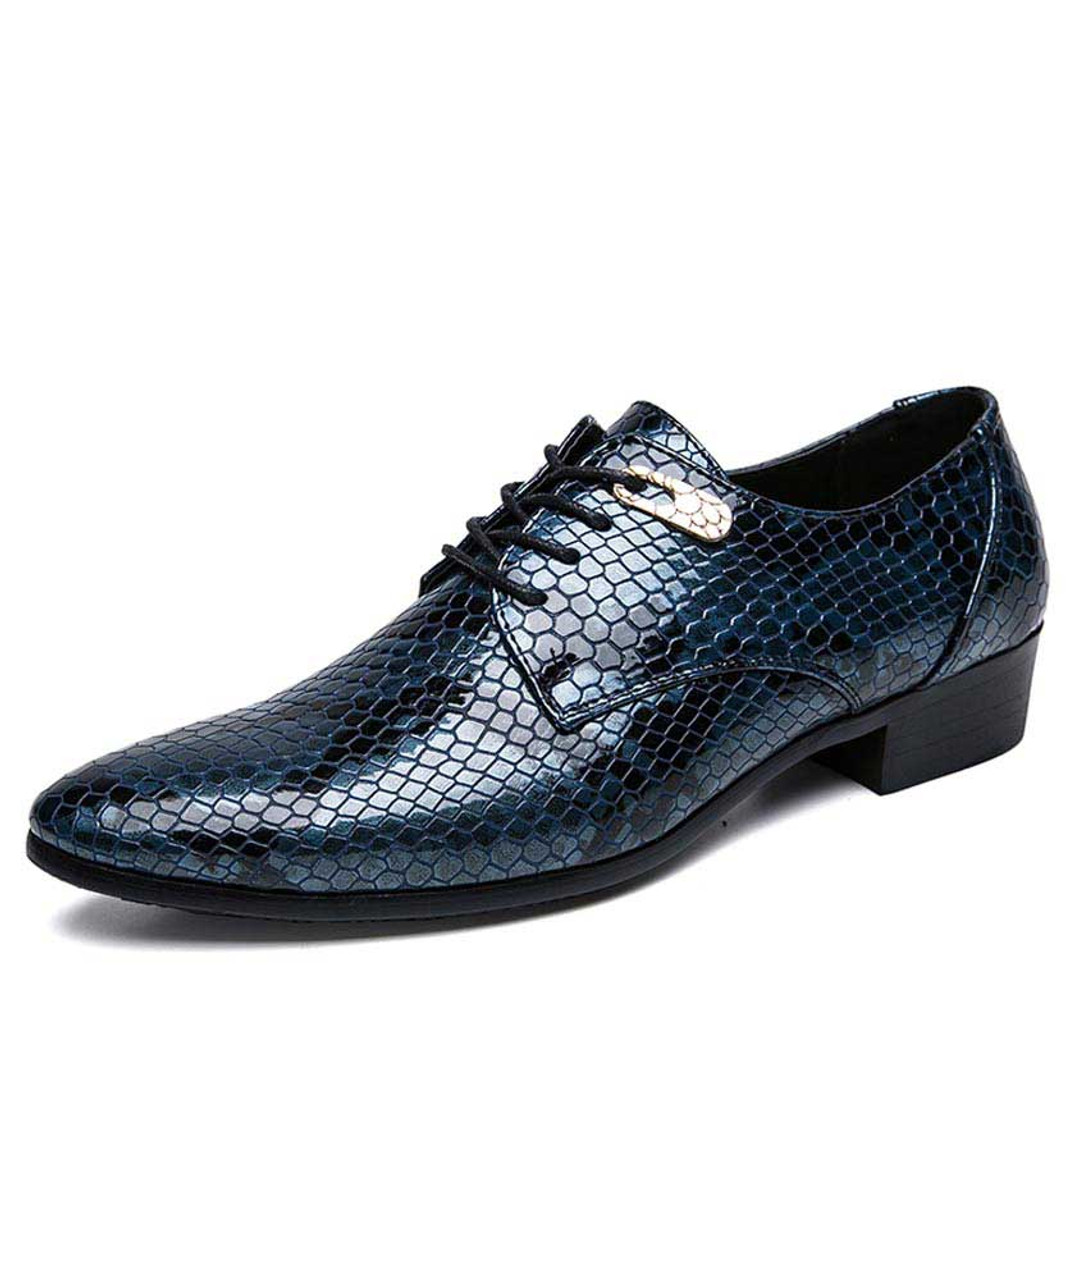 blue snakeskin shoes mens